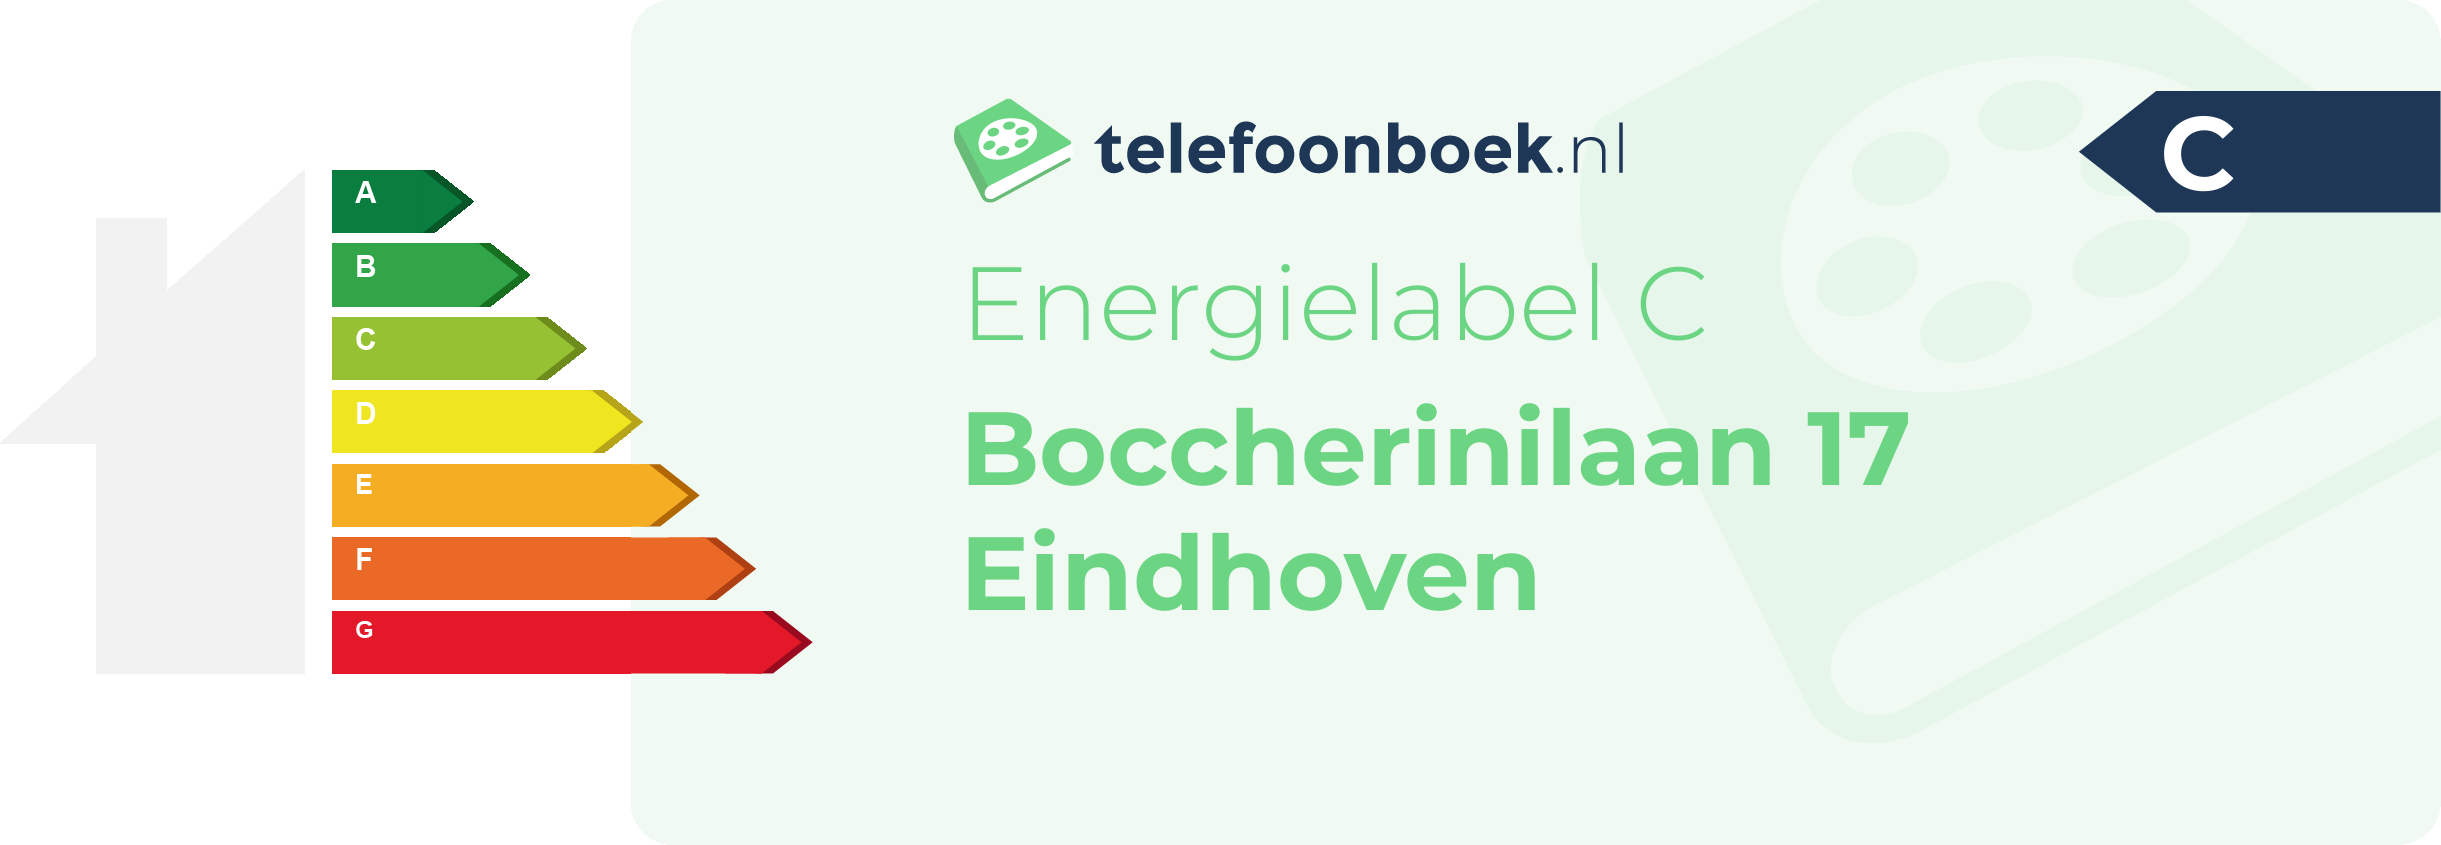 Energielabel Boccherinilaan 17 Eindhoven